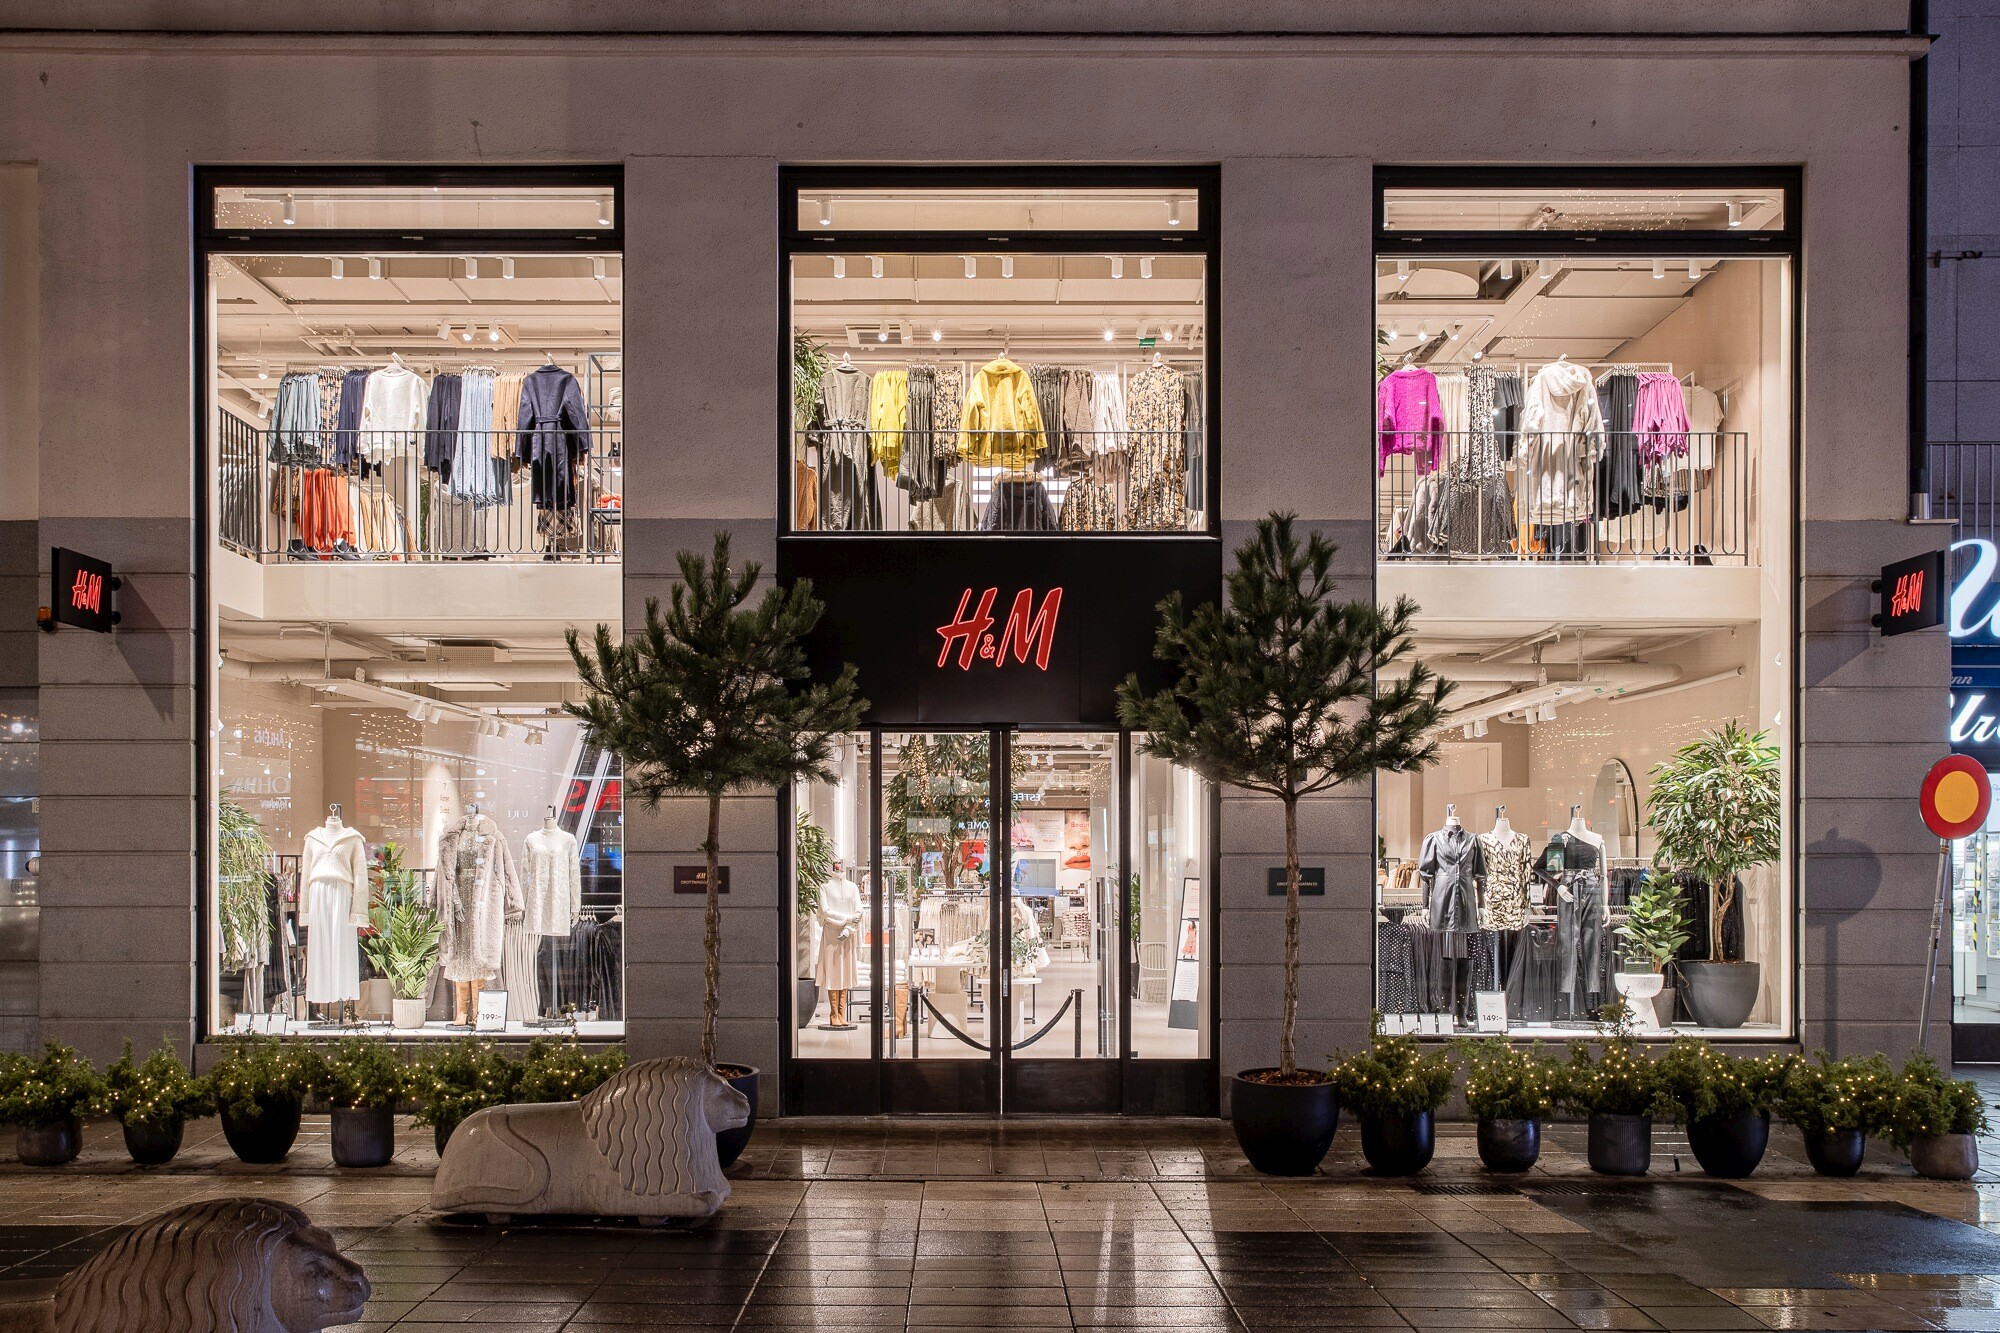 Čína bojkotuje západní značky. Na mušce je H&M i Adidas